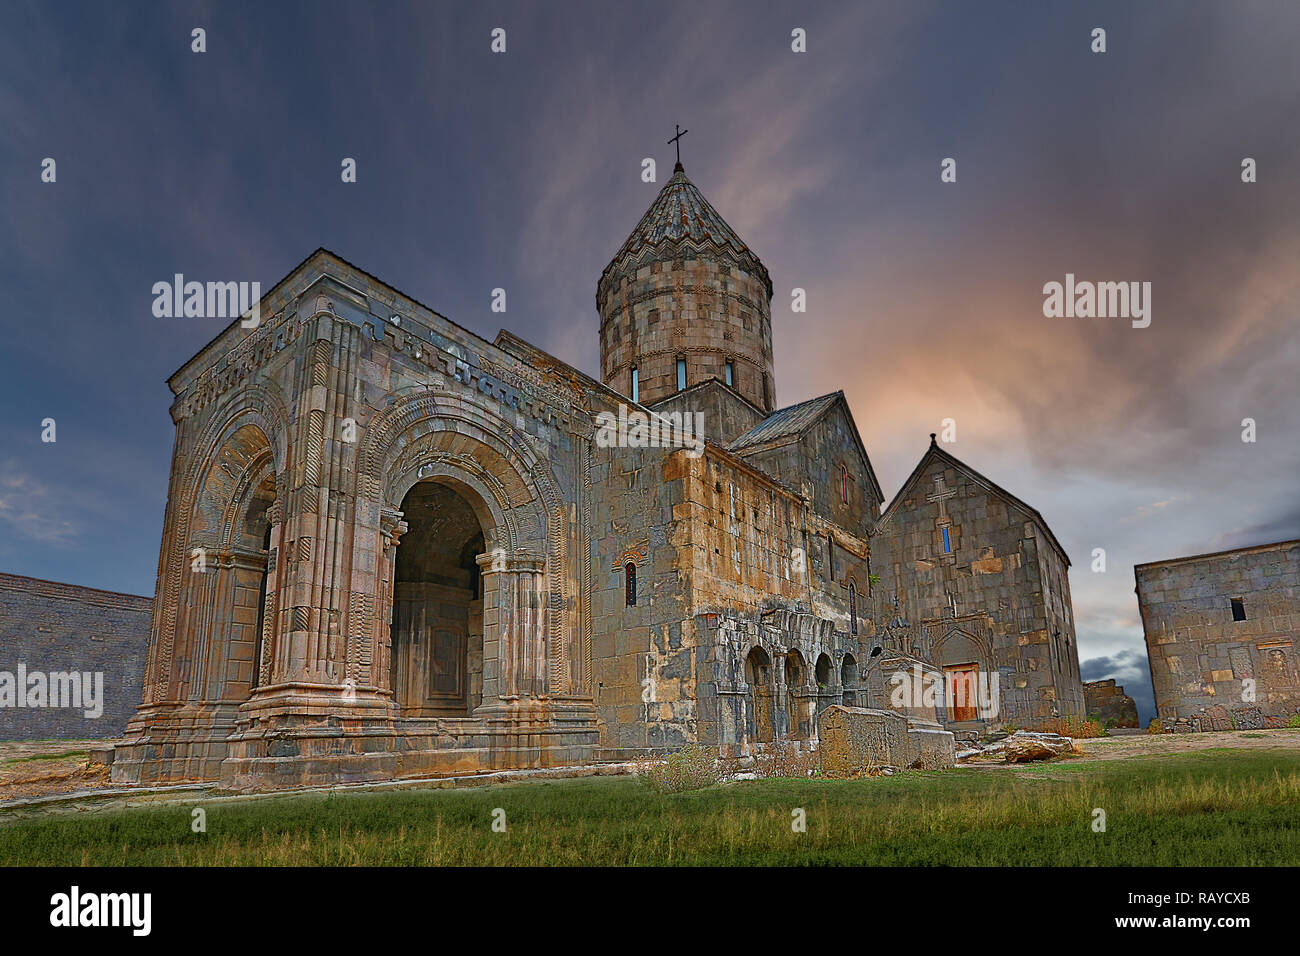 Monastère de Tatev et de l'Église près de la ville de Goris en Arménie Banque D'Images